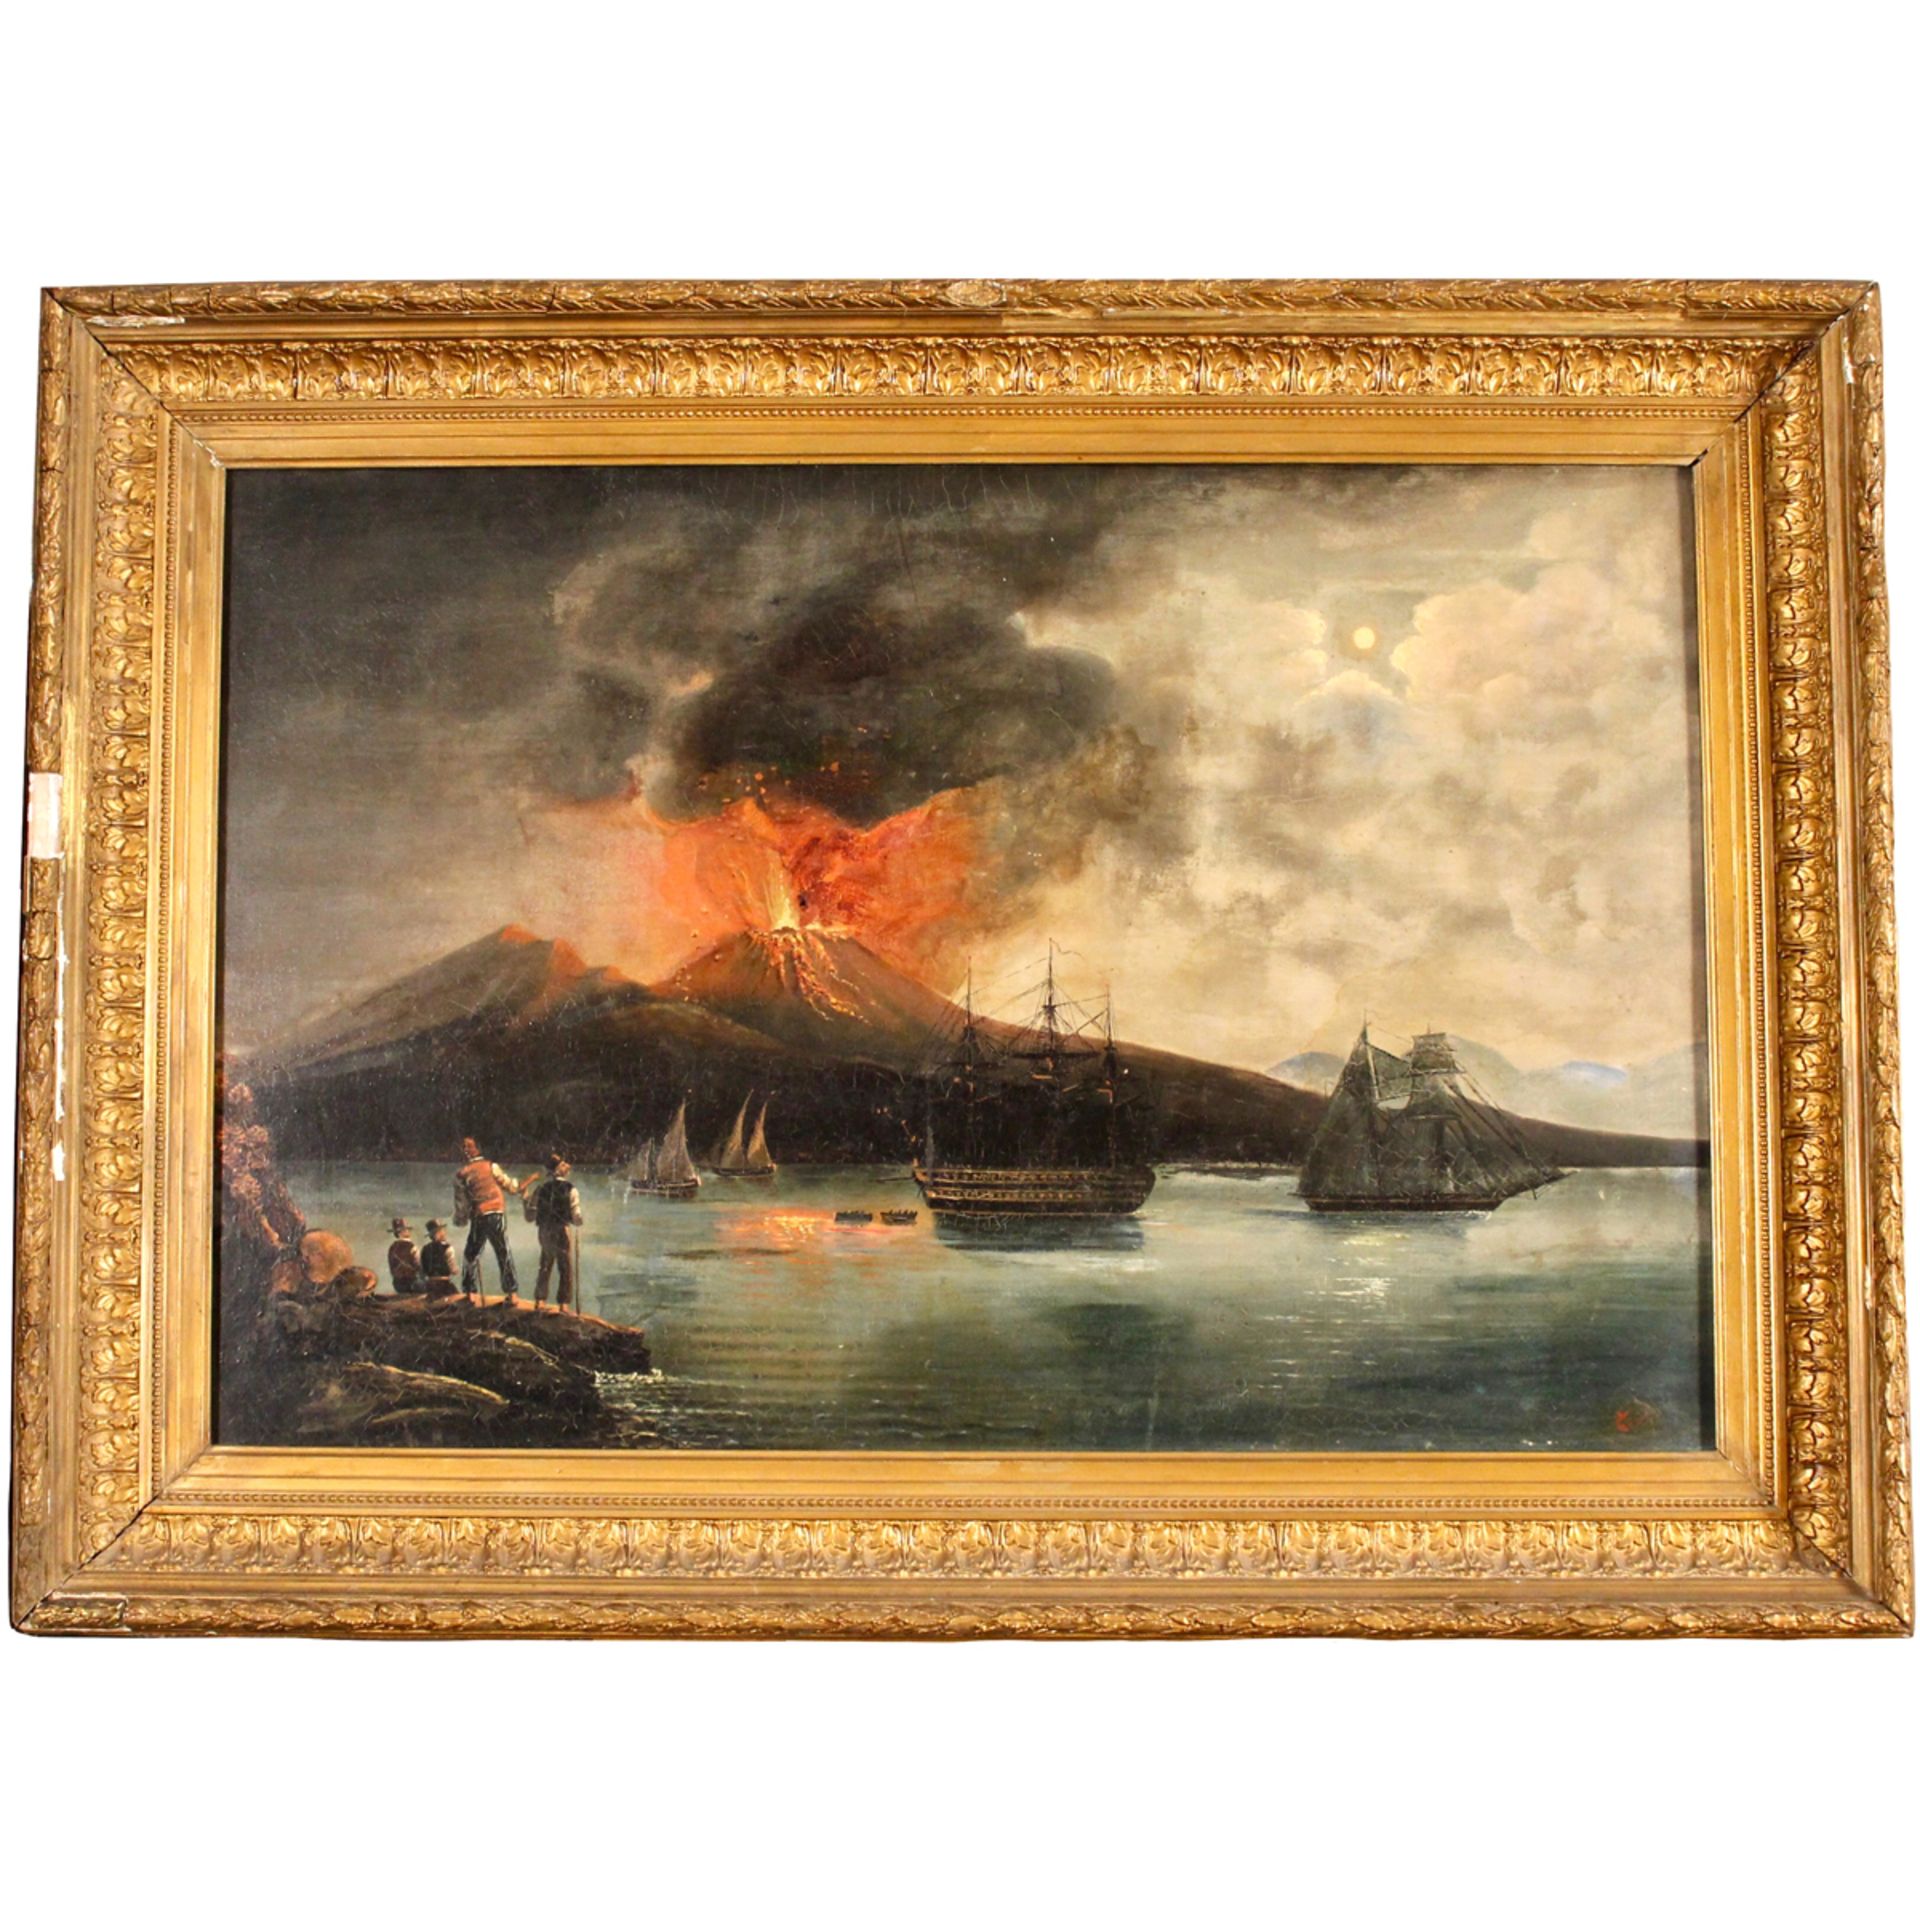 MAESTRO NAPOLETANO INIZI DEL SECOLO XIX “Eruzione del Vesuvio”- NEAPOLITAN MASTER EARLY XIX CENTURY - Image 2 of 2